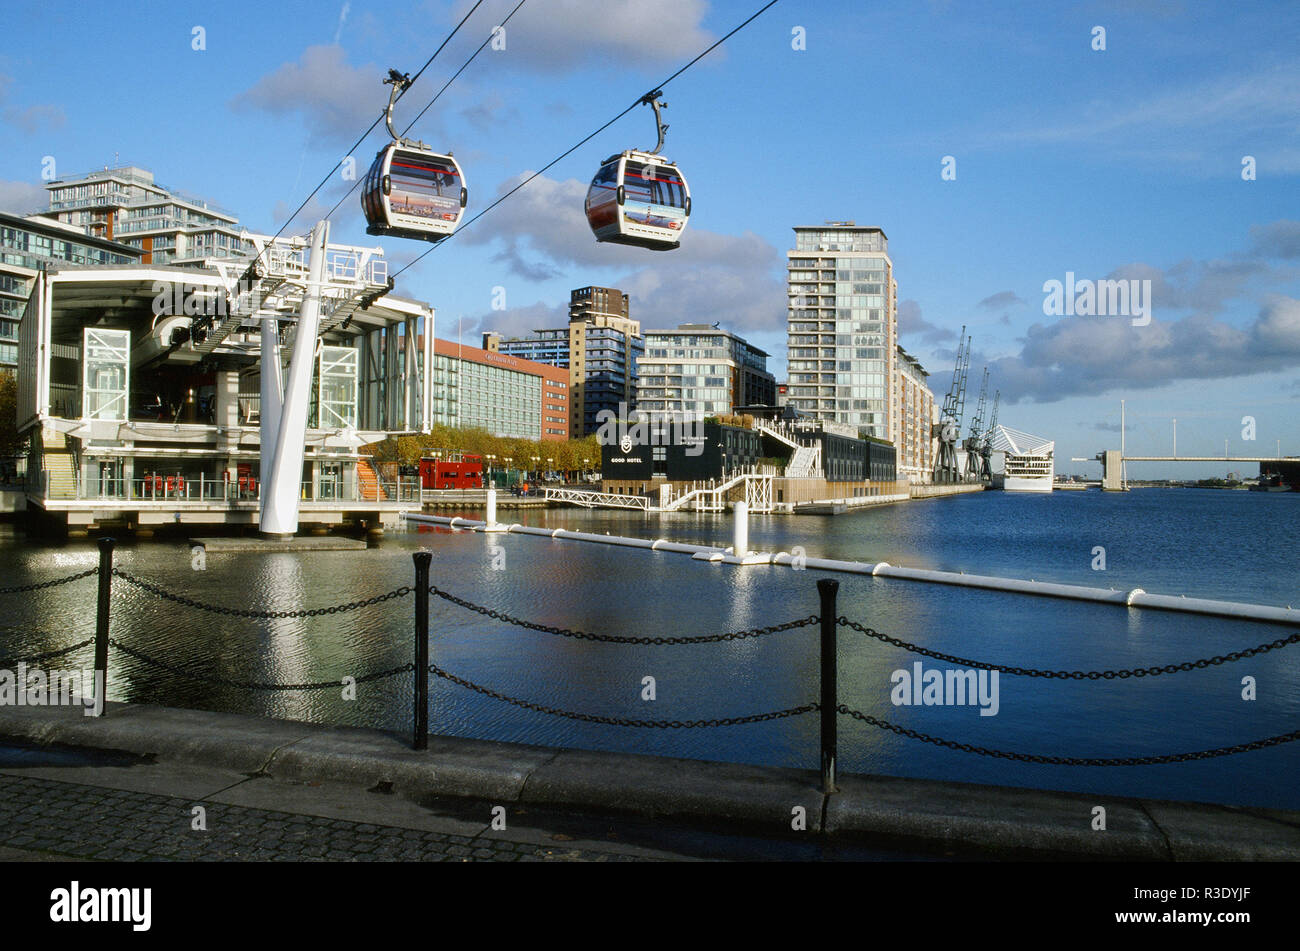 Unis Cable Car crossing au Royal Victoria Dock, East London UK Banque D'Images